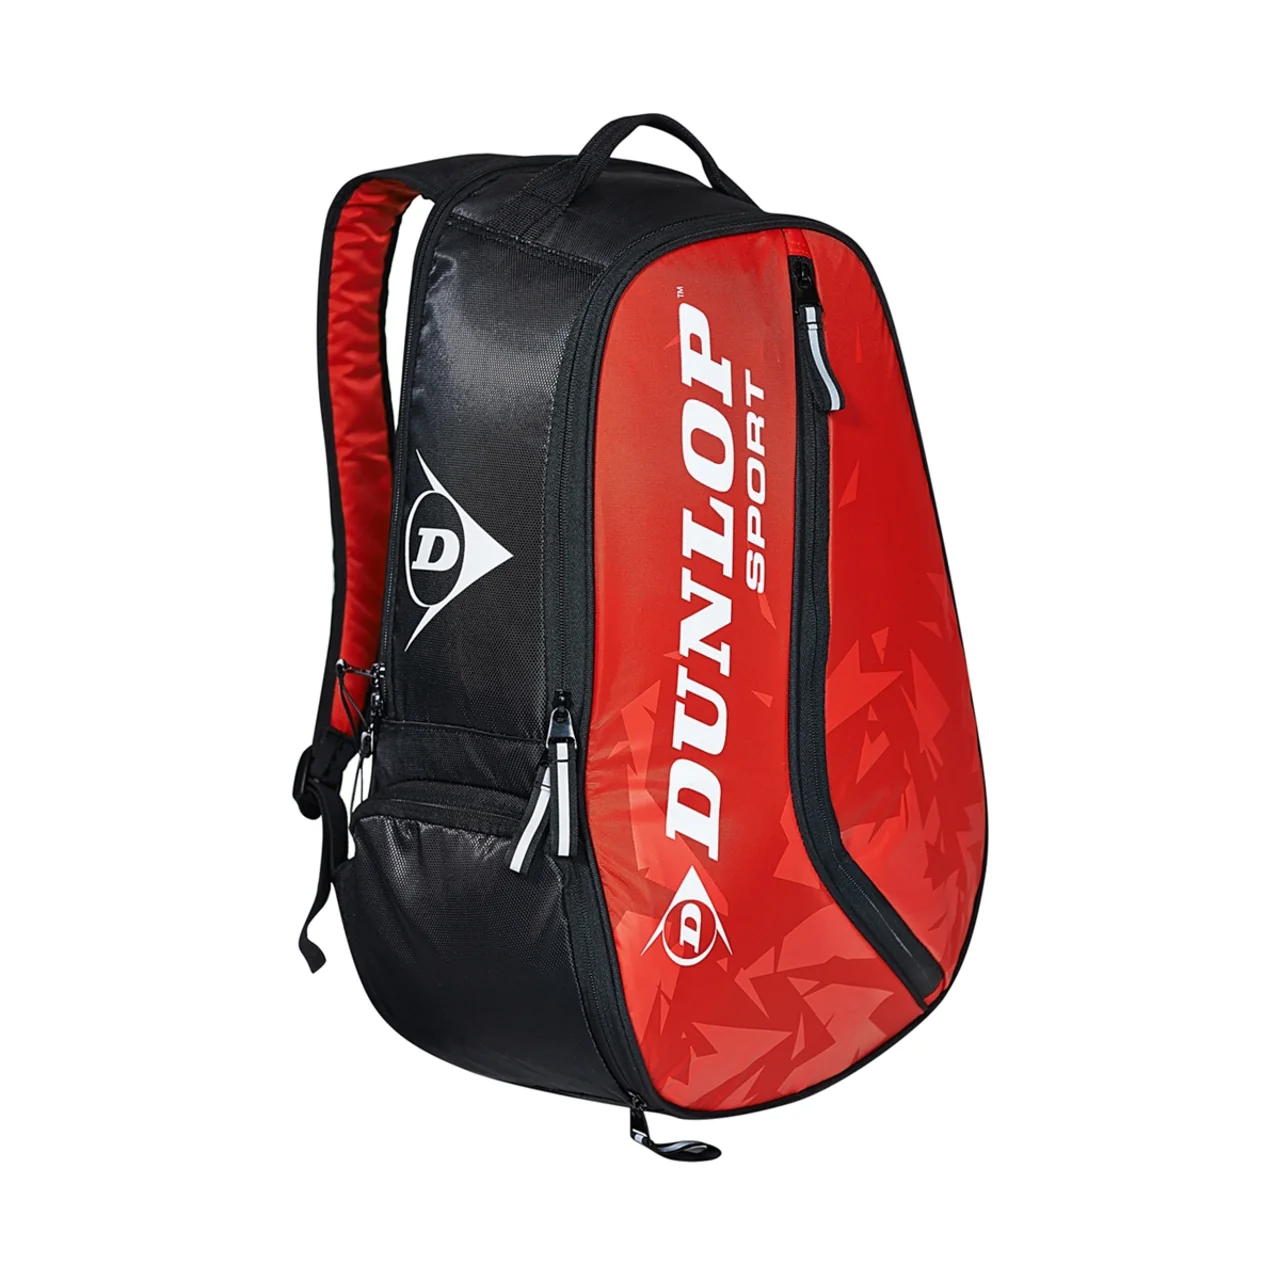 Dunlop Tac Tour Backpack Red